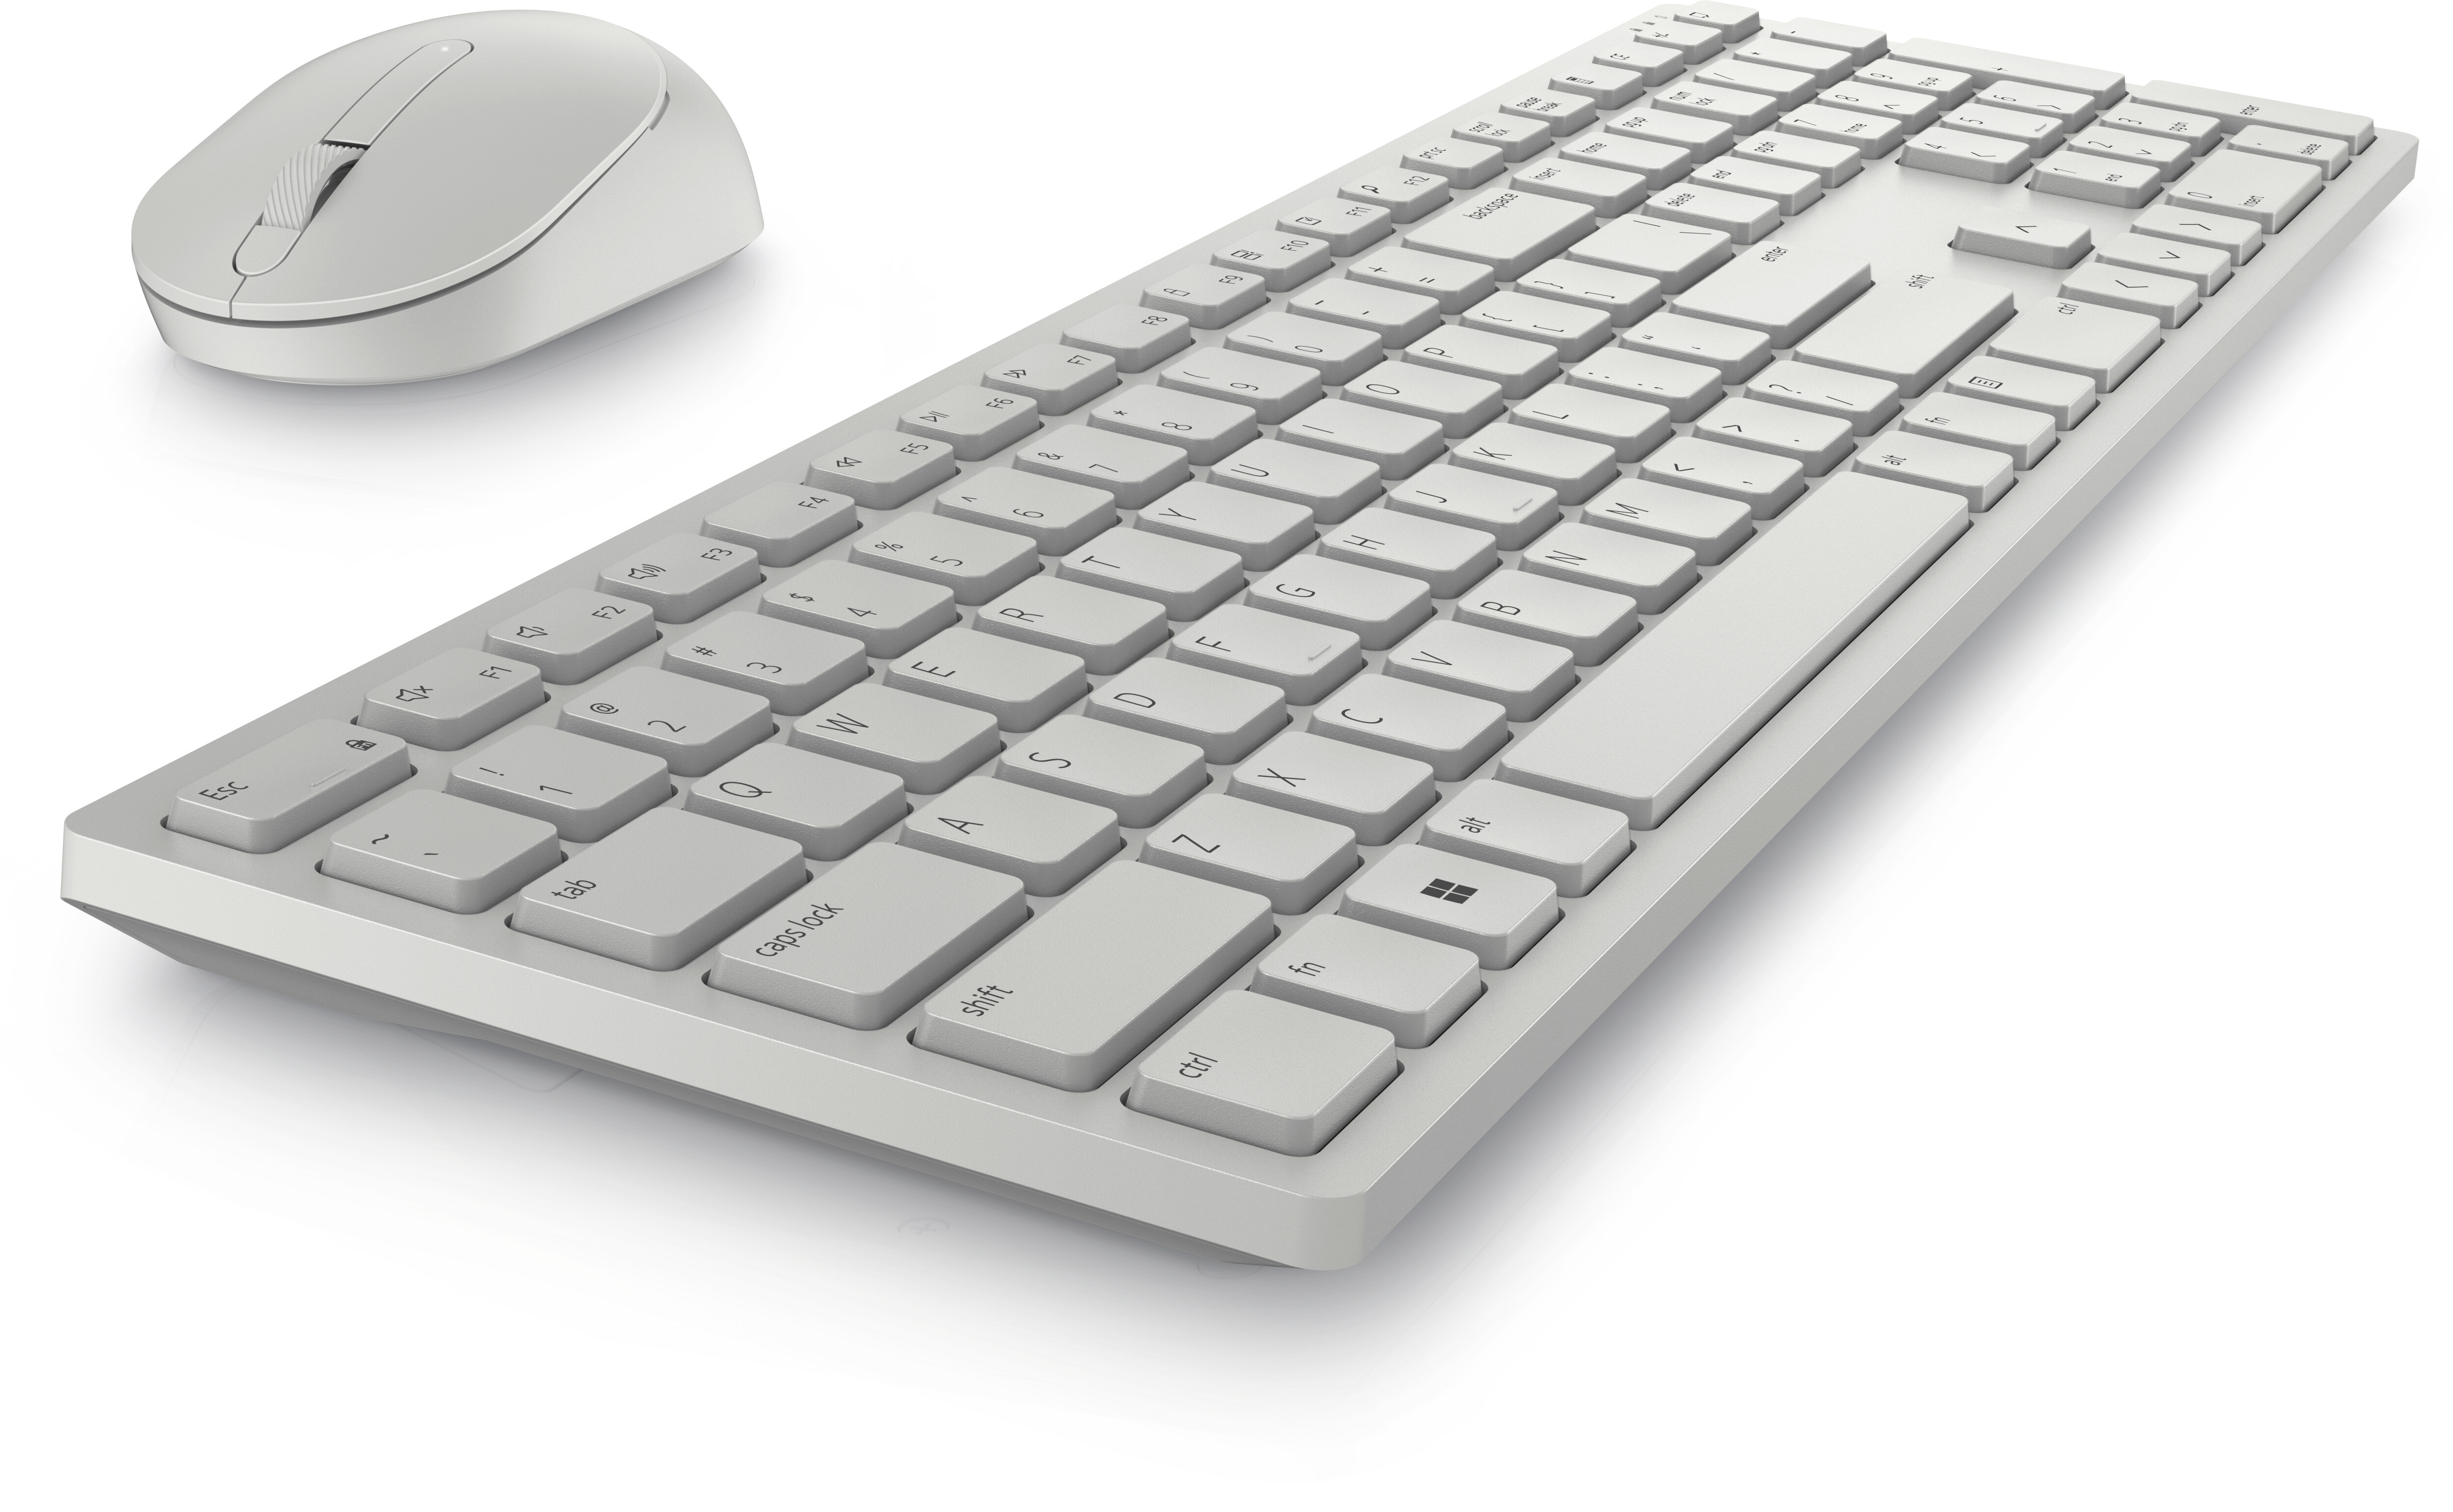 Acquistare Set tastiera e mouse Dell KM5221W (KM5221WBKB-ITL)